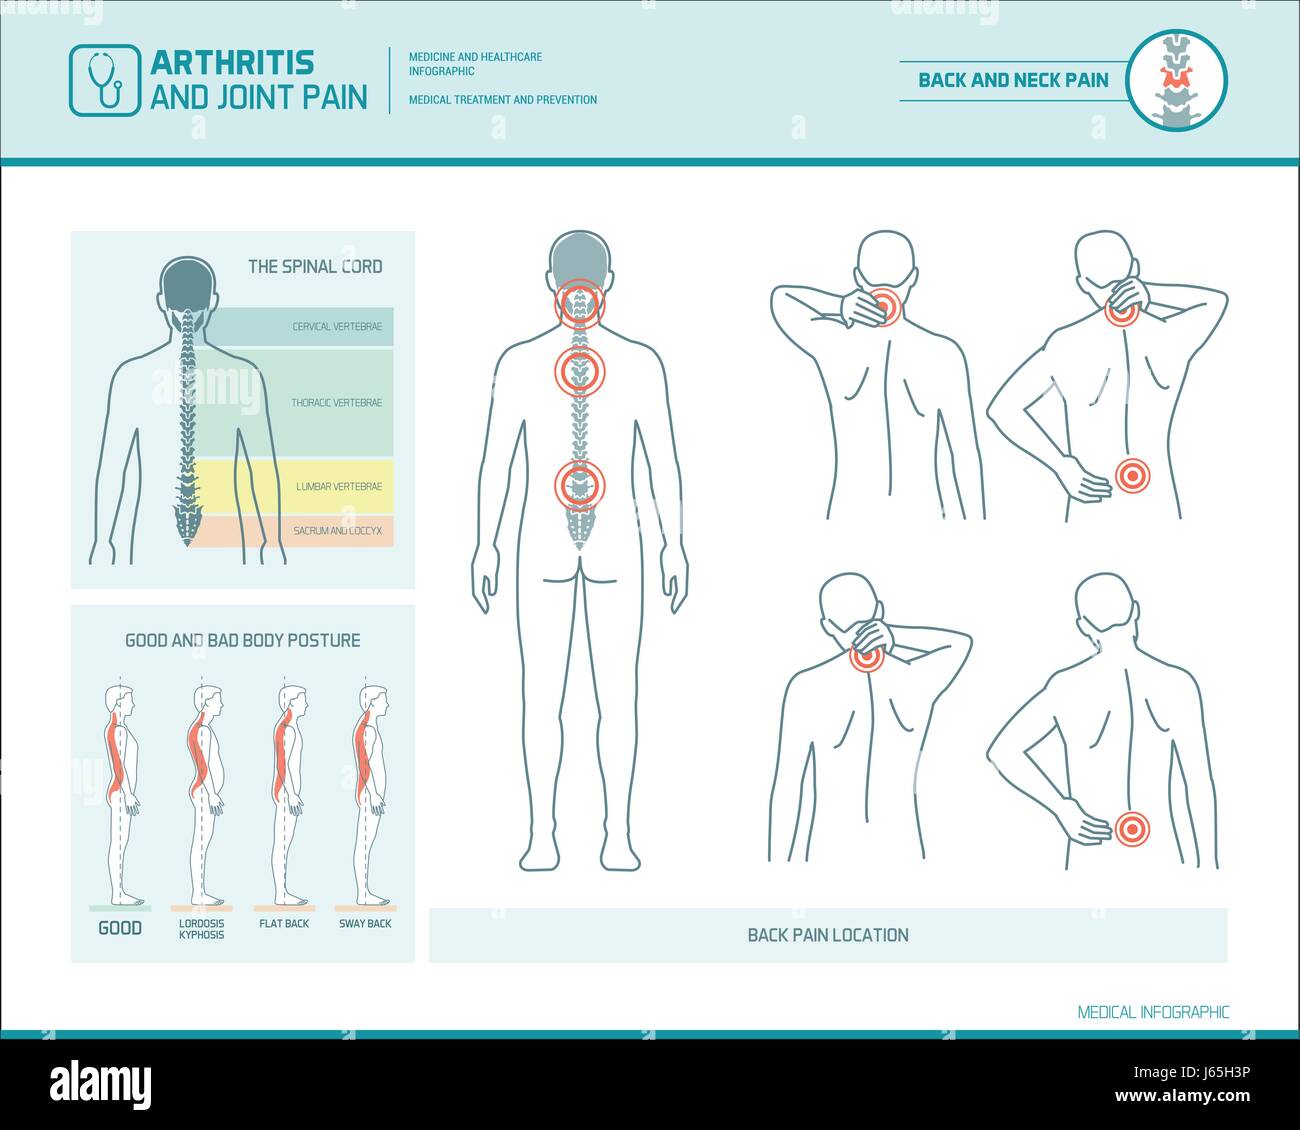 Les maux de dos et la posture corporelle infographie avec illustrations anatomiques Illustration de Vecteur